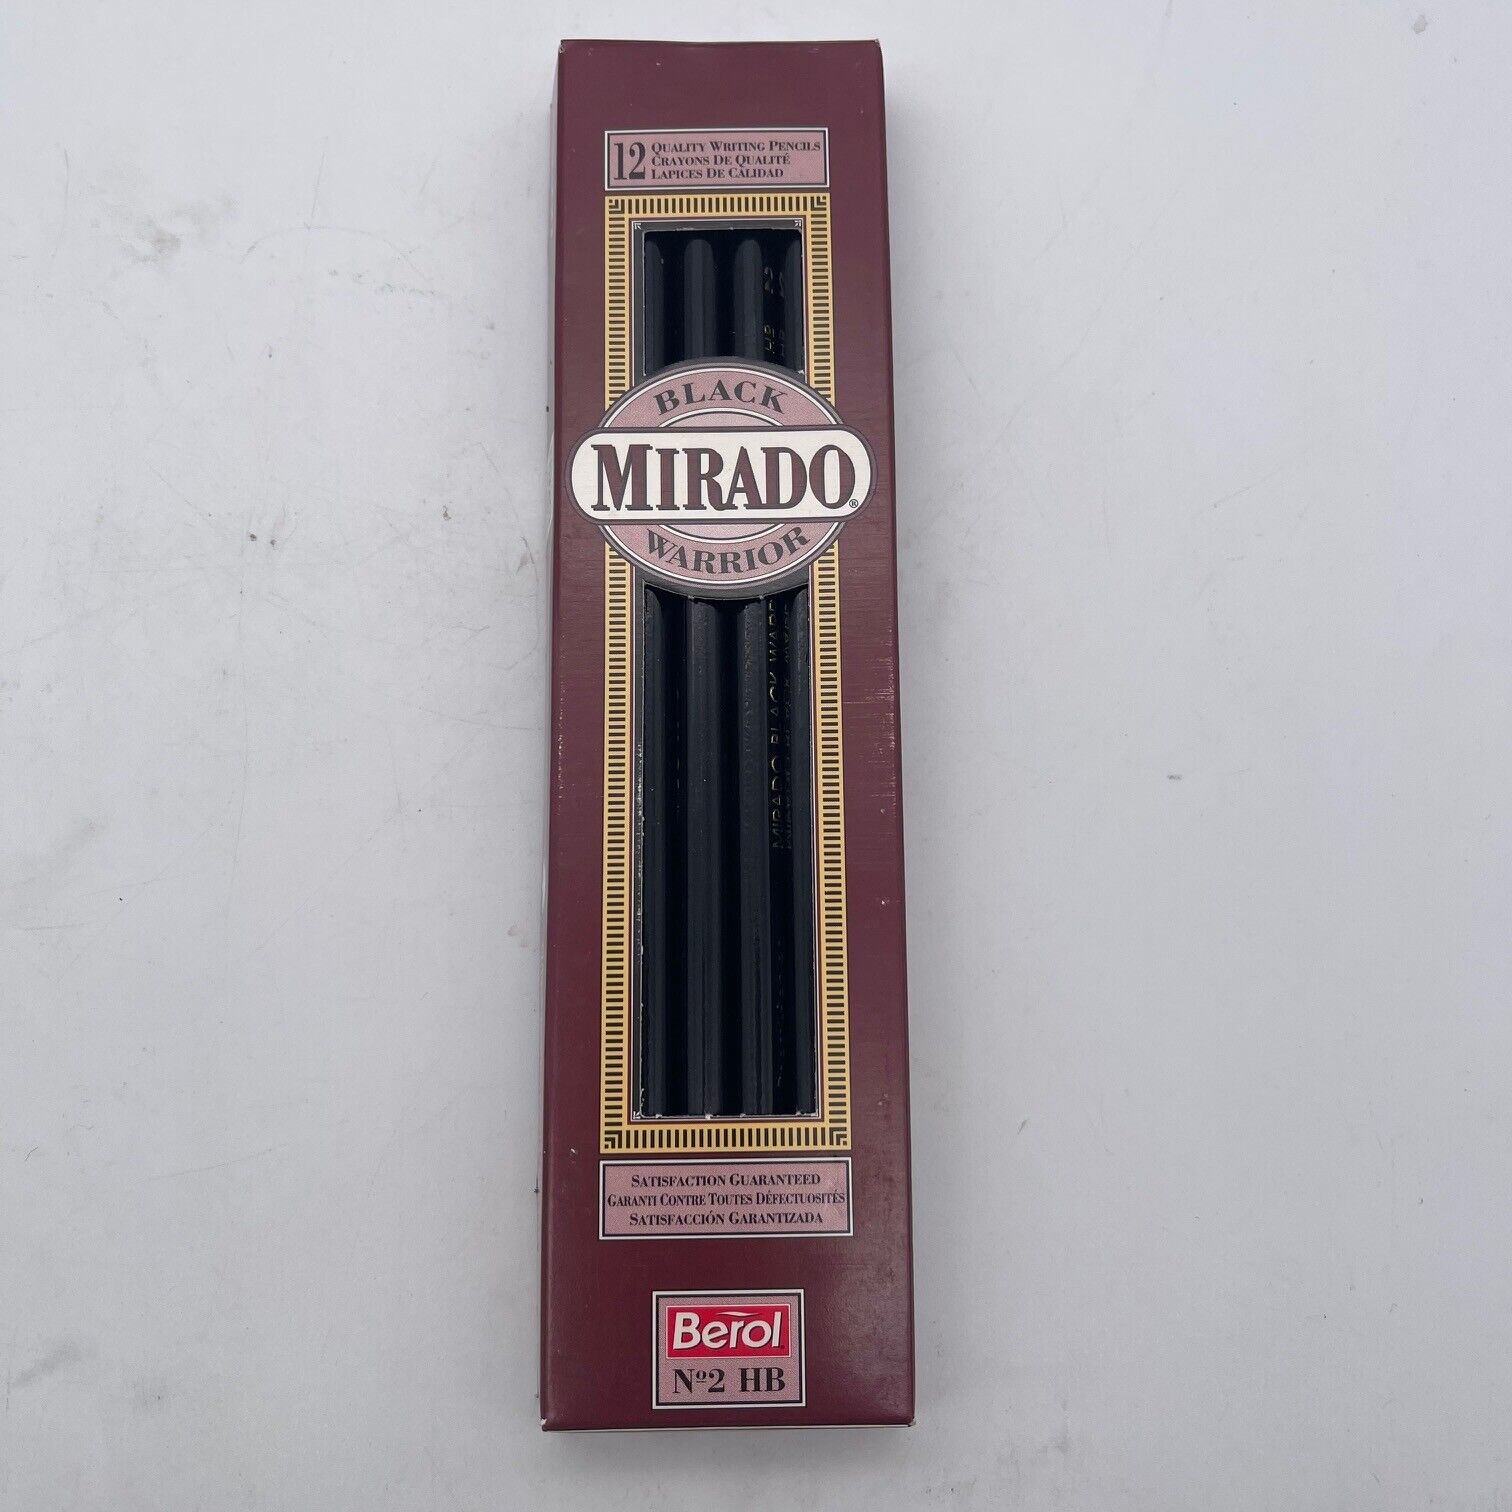 Vintage Berol Mirado Black Warrior 372-2 HB USA 12 Pencils 1993 N